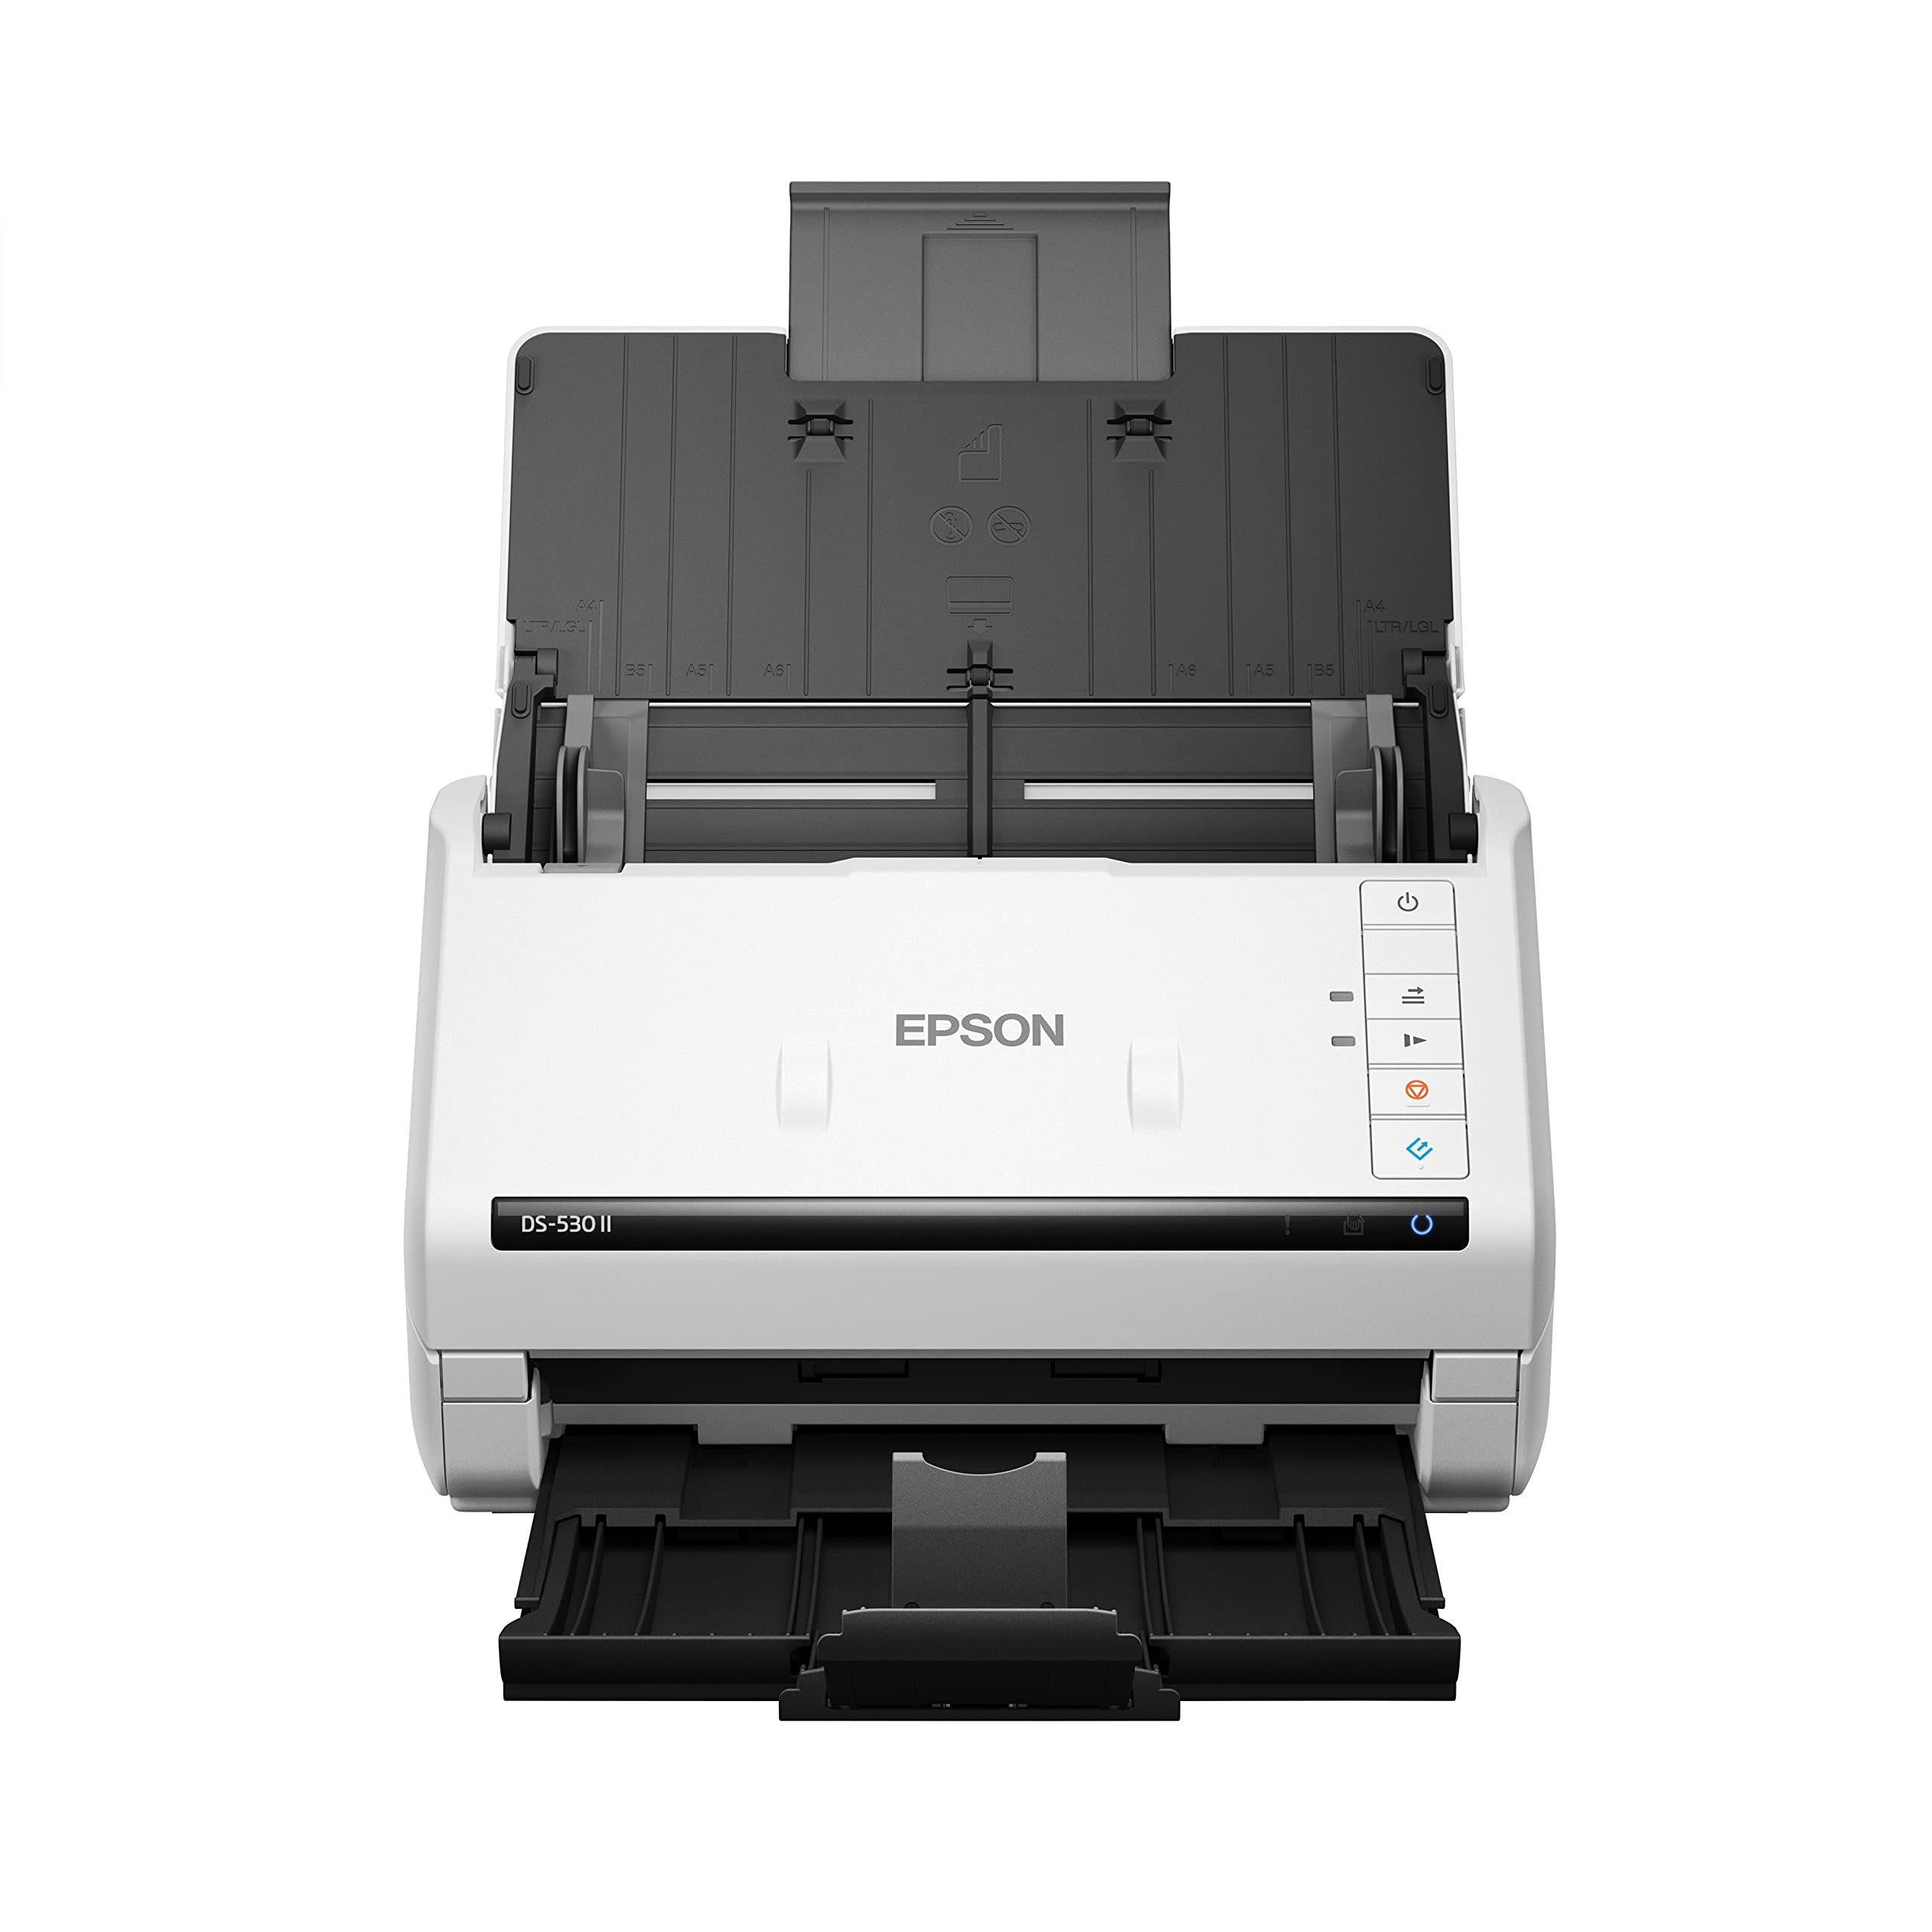  Epson DS-530 II Цветной дуплексный сканер документов для ПК и Mac с листовой подачей и автоподатчиком документов (АПД)...